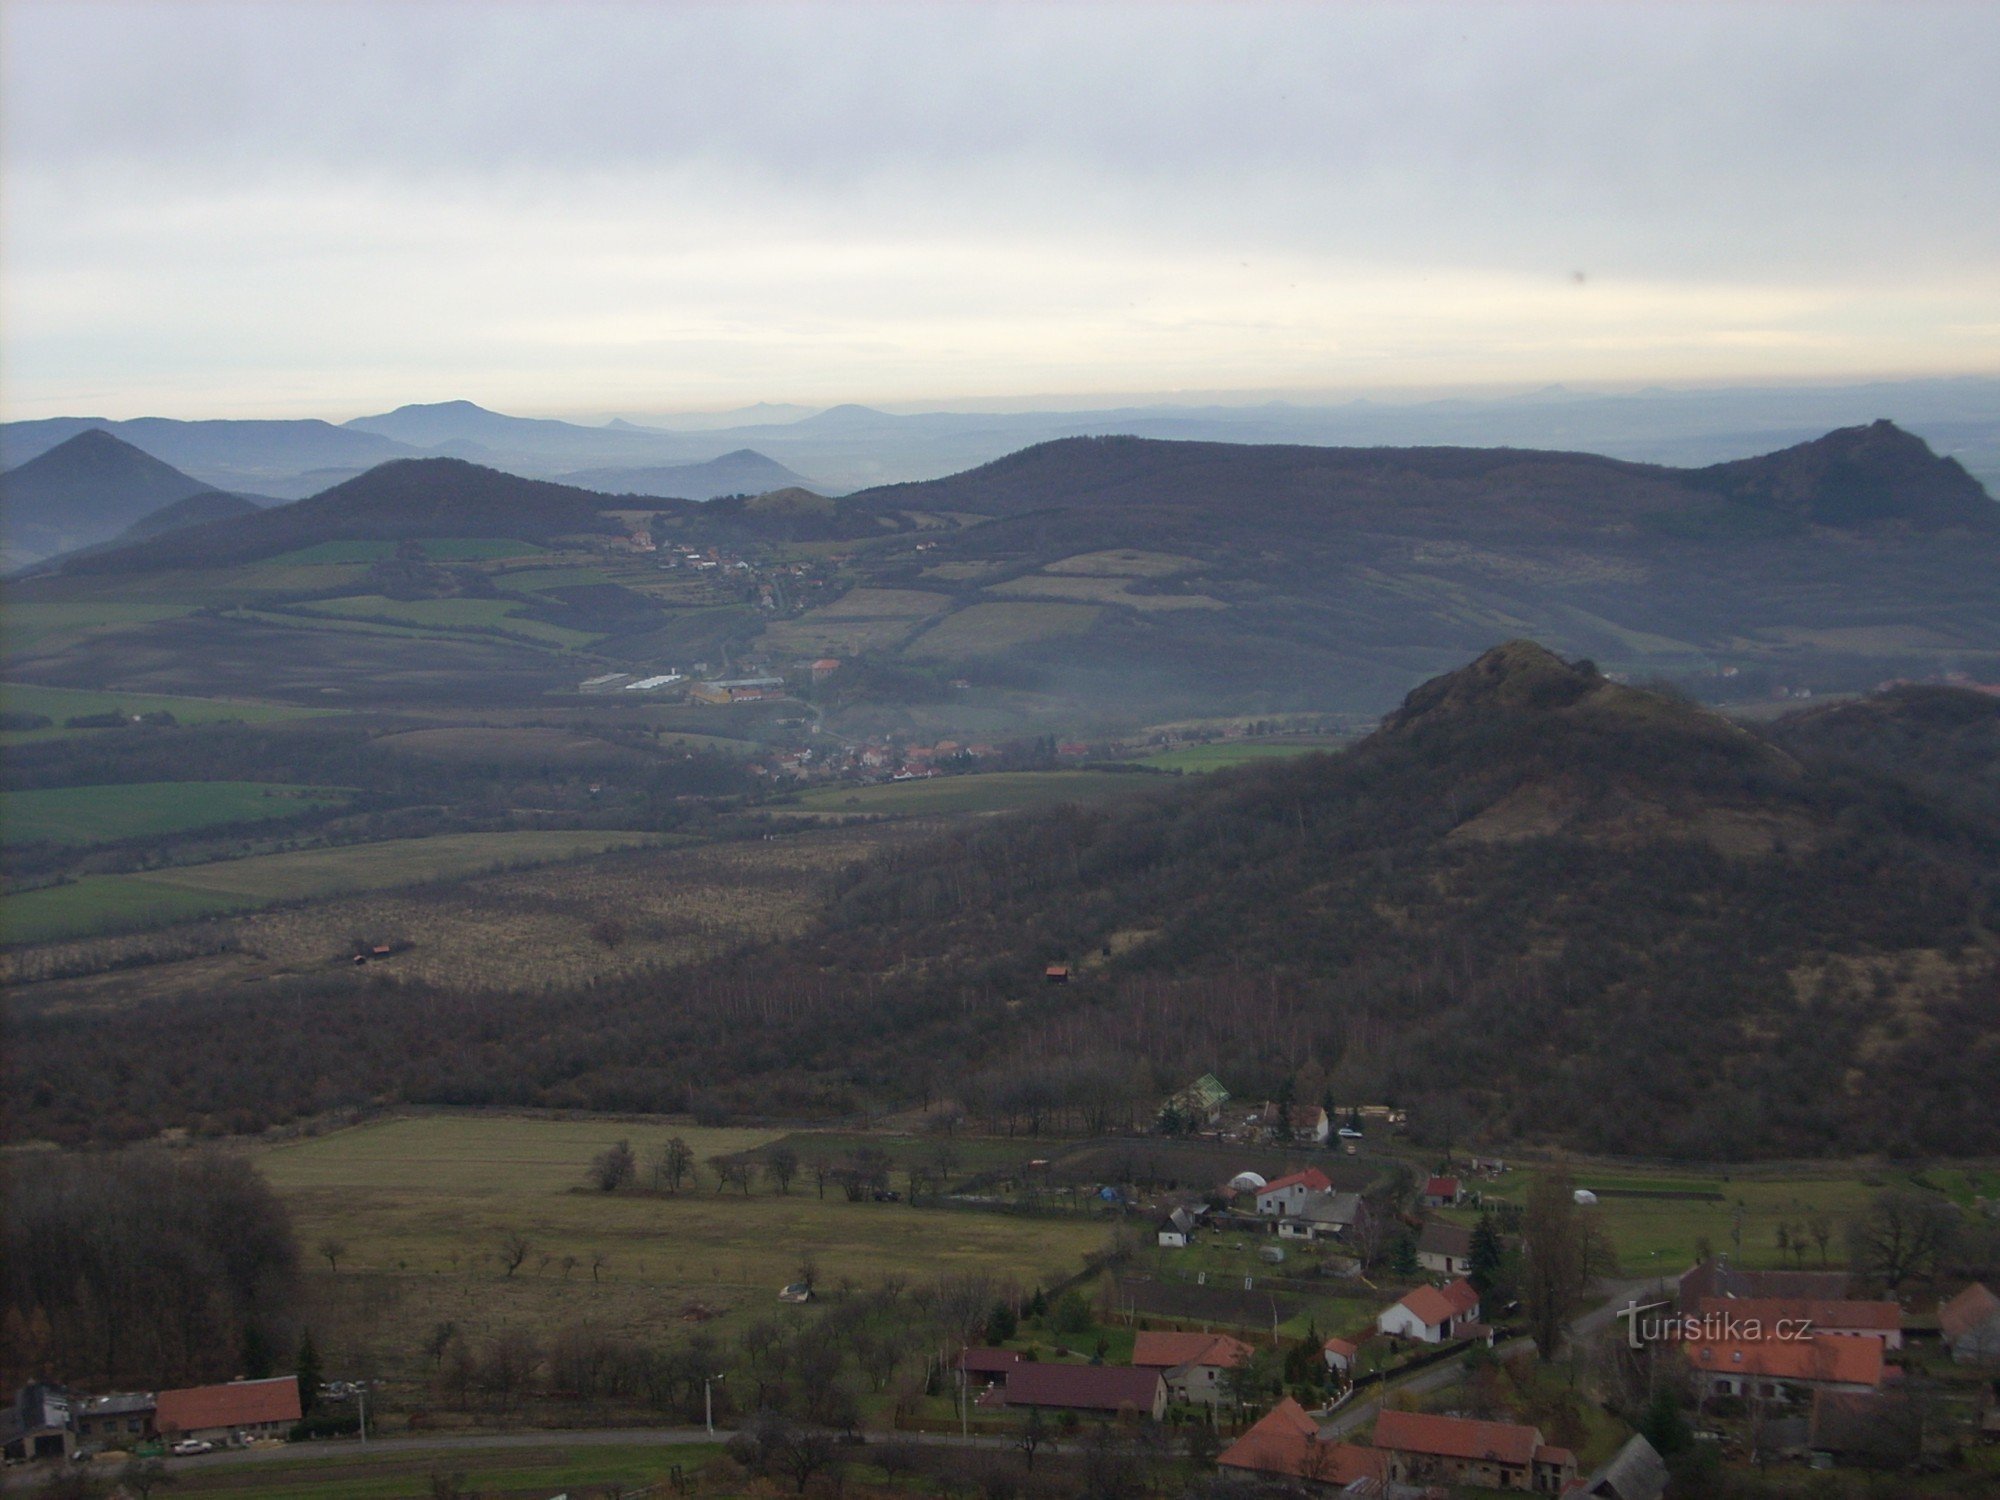 View of the surrounding peaks of the Český středohoří